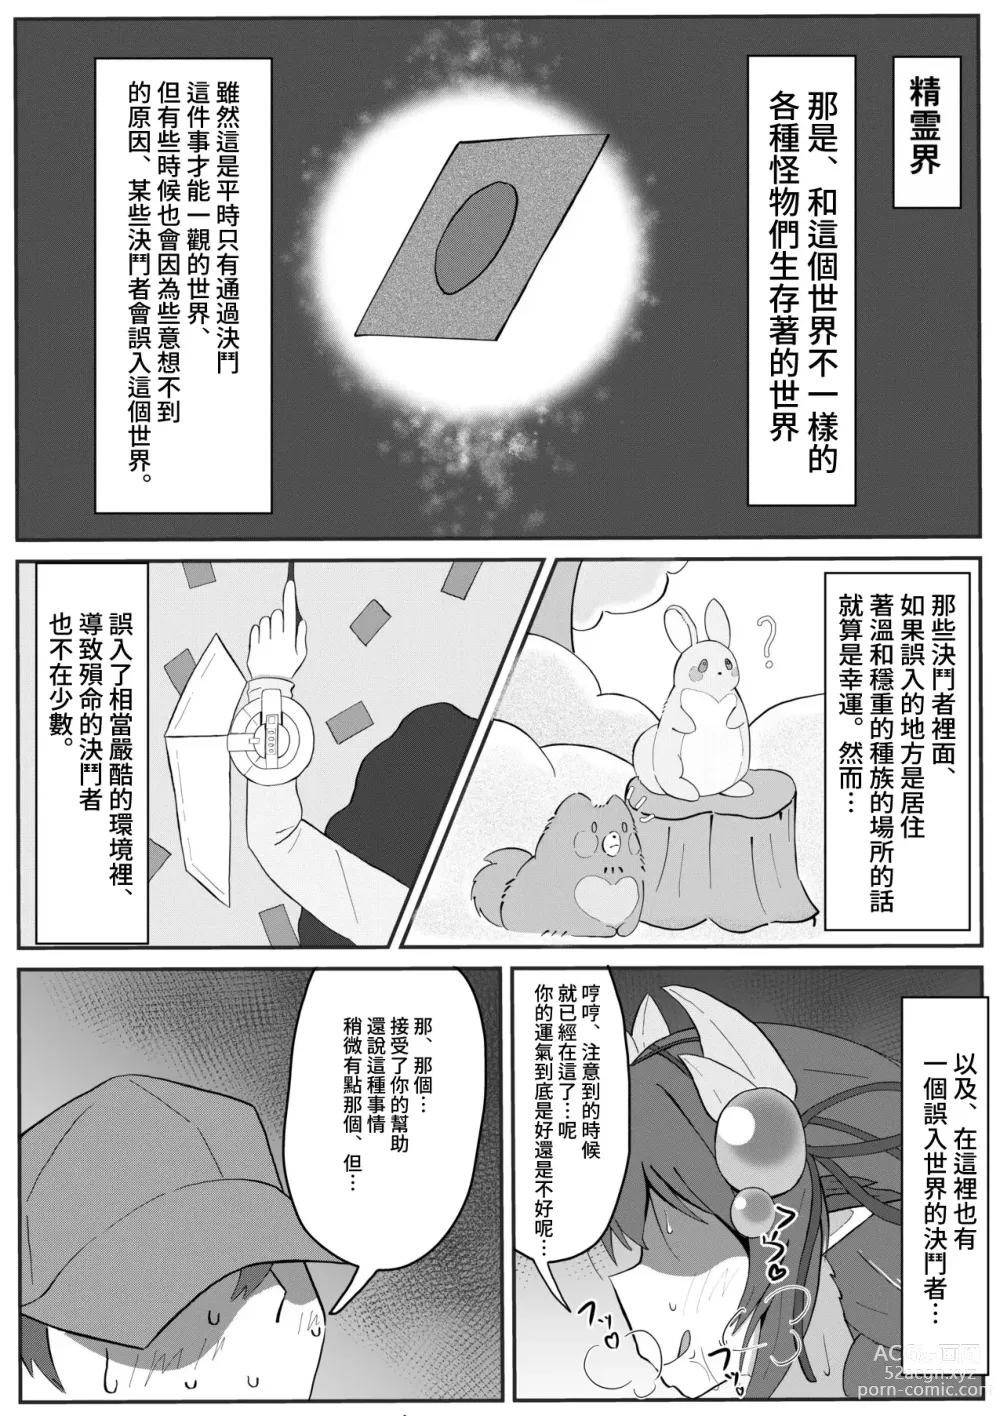 Page 1 of doujinshi Atrax ni Tsukamatte Oishiku Taberareru Ippan Kettousha no Manga